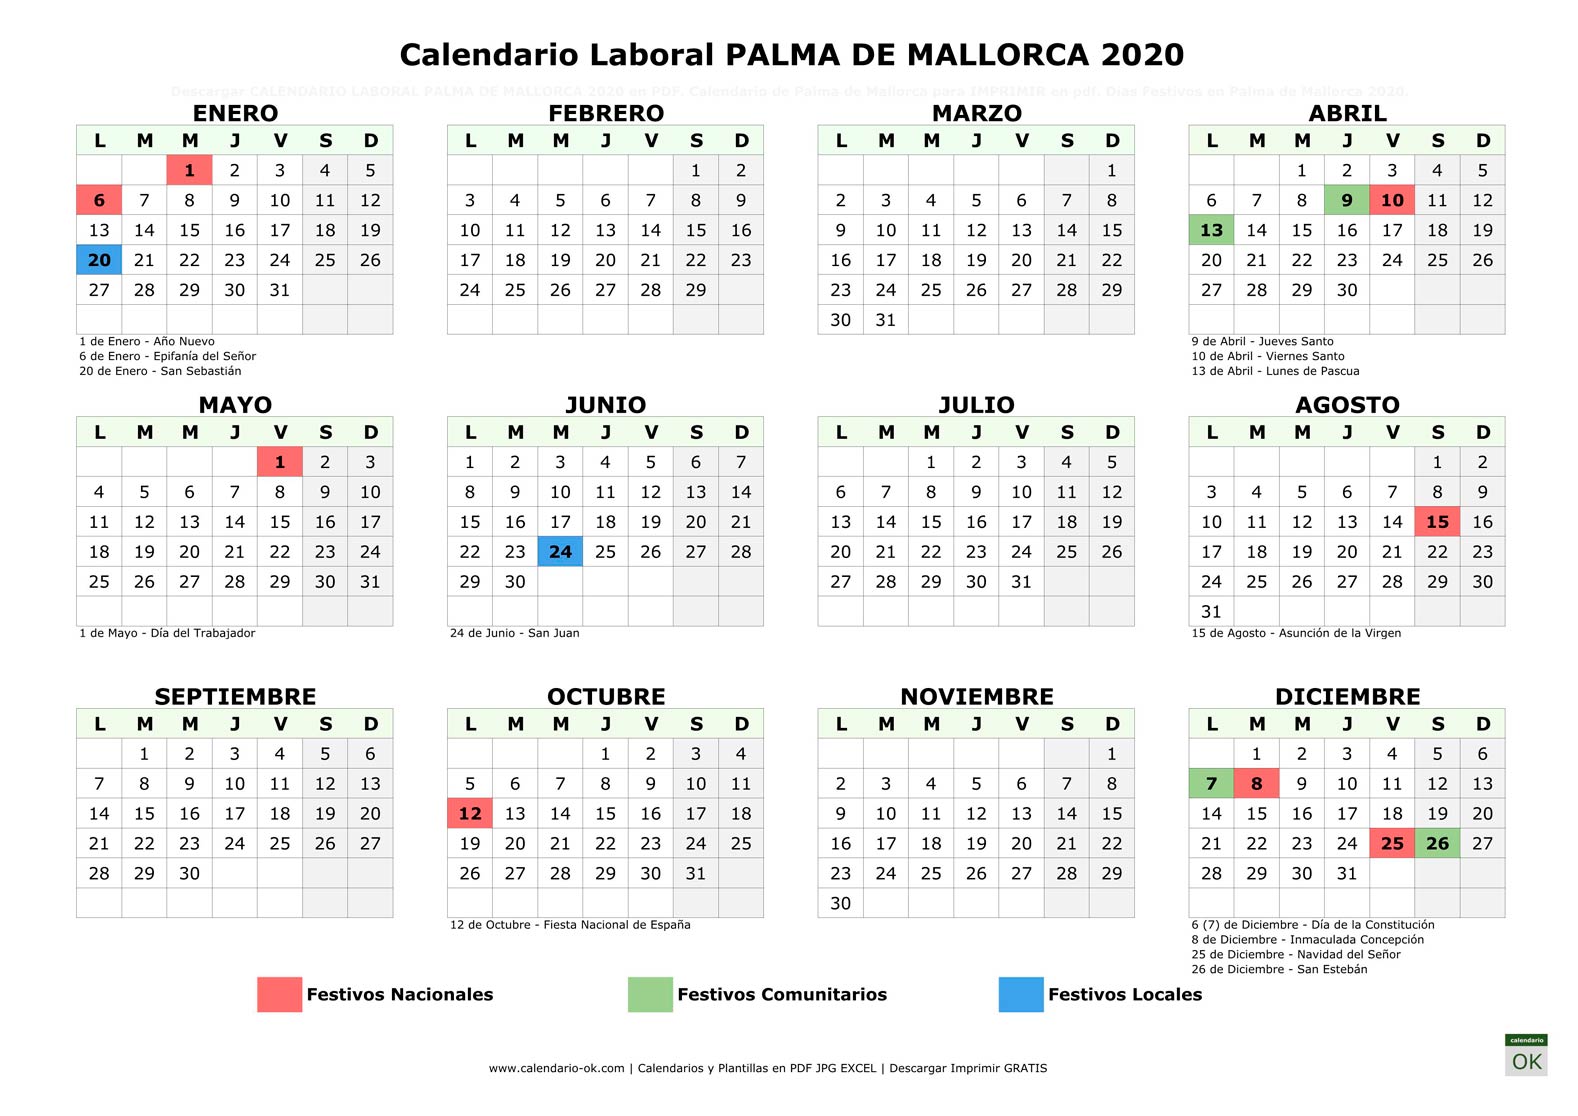 Calendario Laboral PALMA DE MALLORCA 2020 horizontal